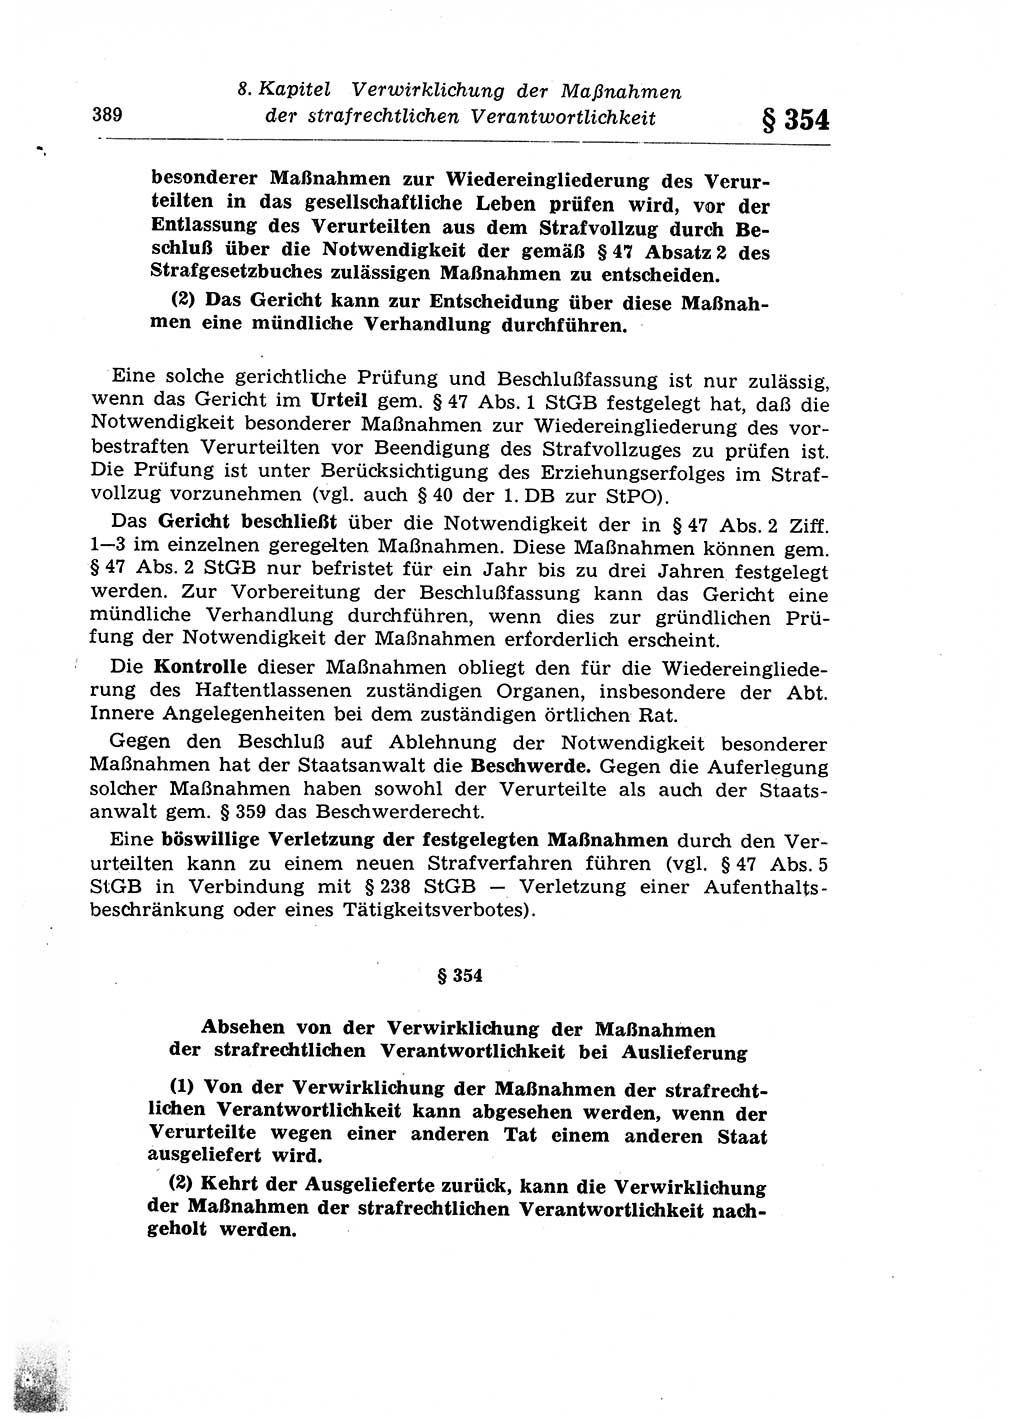 Strafprozeßrecht der DDR (Deutsche Demokratische Republik), Lehrkommentar zur Strafprozeßordnung (StPO) 1968, Seite 389 (Strafprozeßr. DDR Lehrkomm. StPO 19688, S. 389)